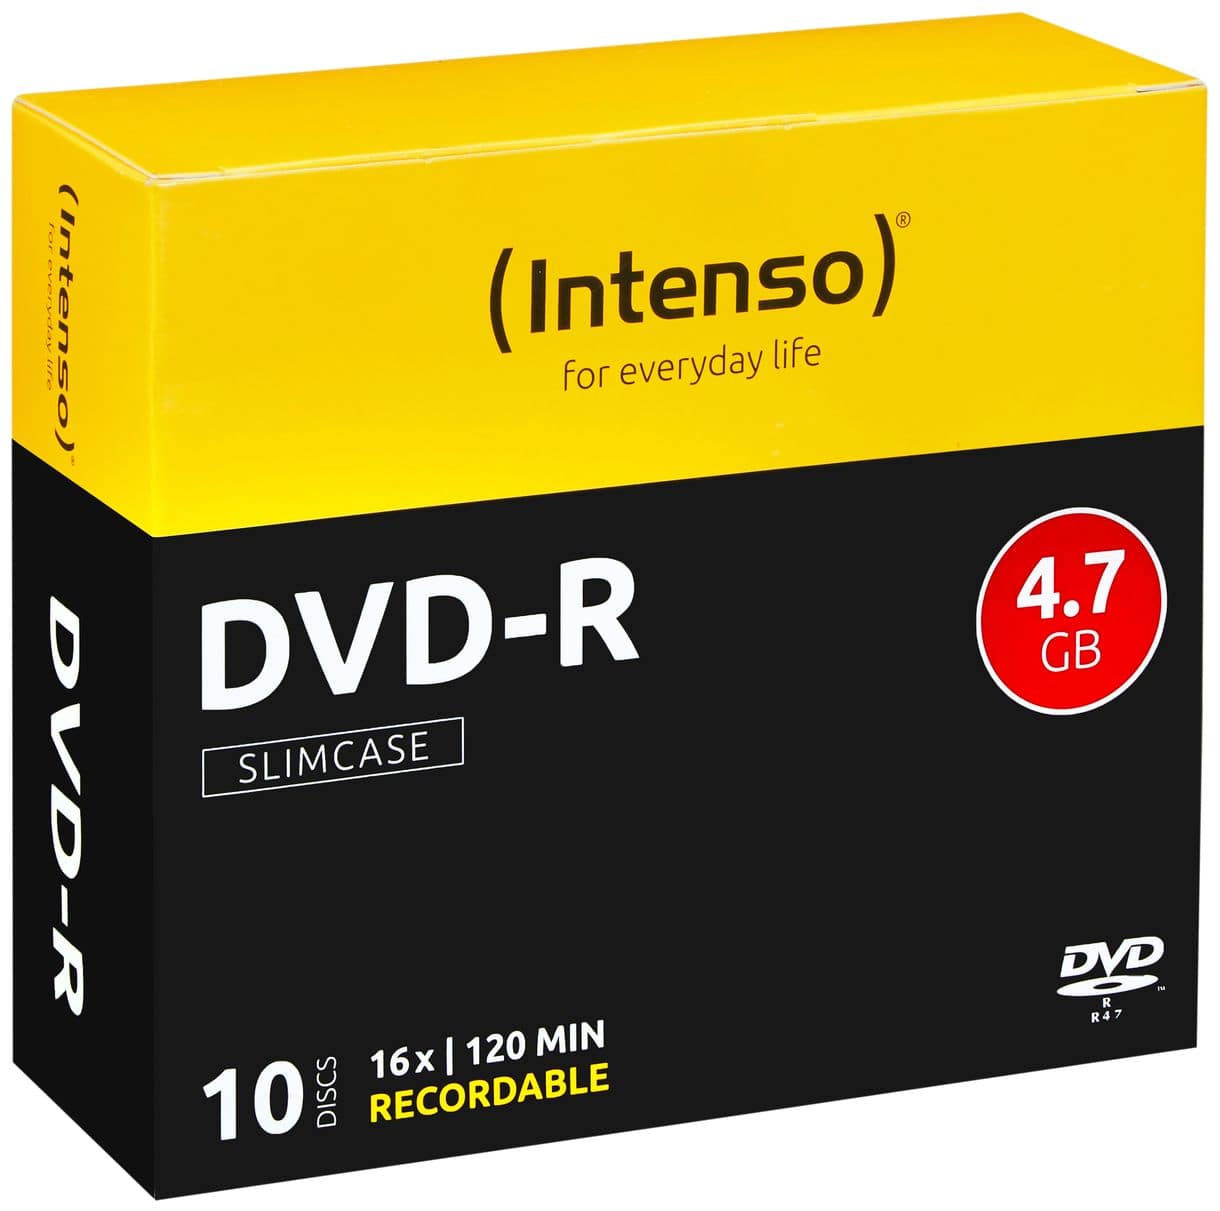 DVD-R 4.7GB, 16x 